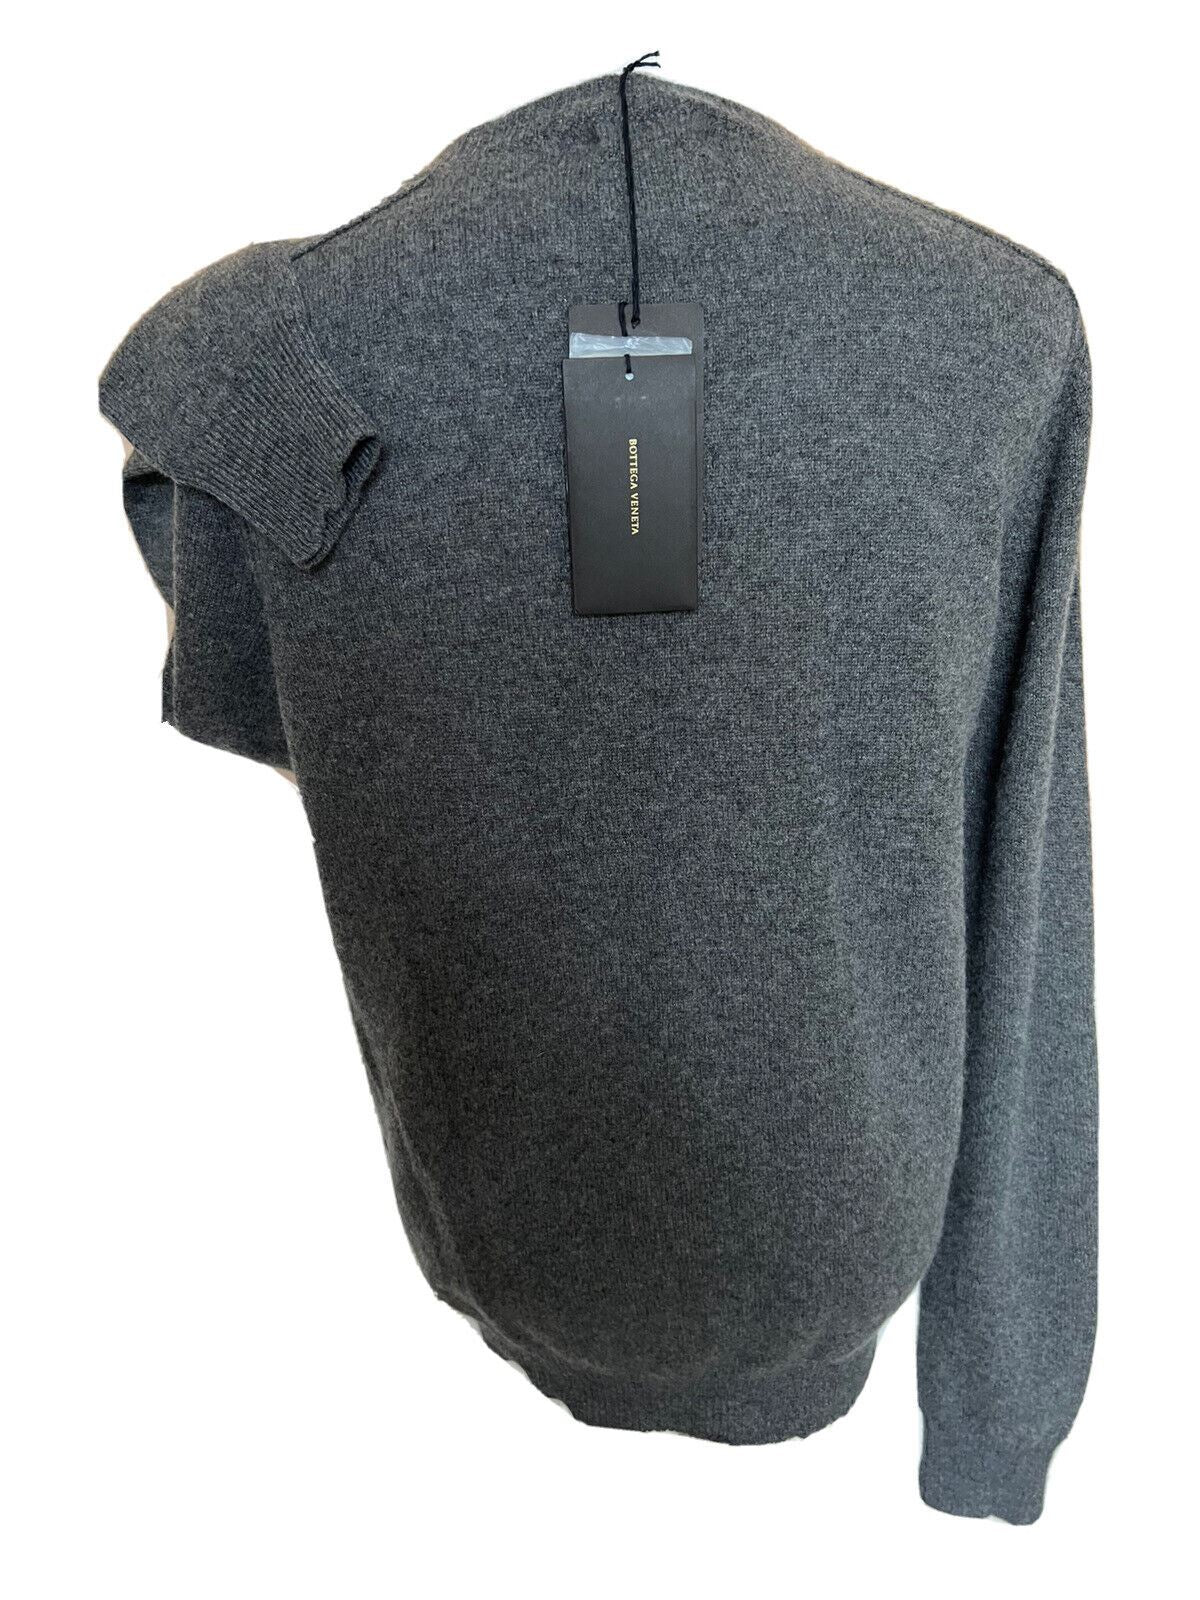 СЗТ $1250 Bottega Veneta Cashmere Pullover Sweater Grey 40 США (50 евро) 603610 